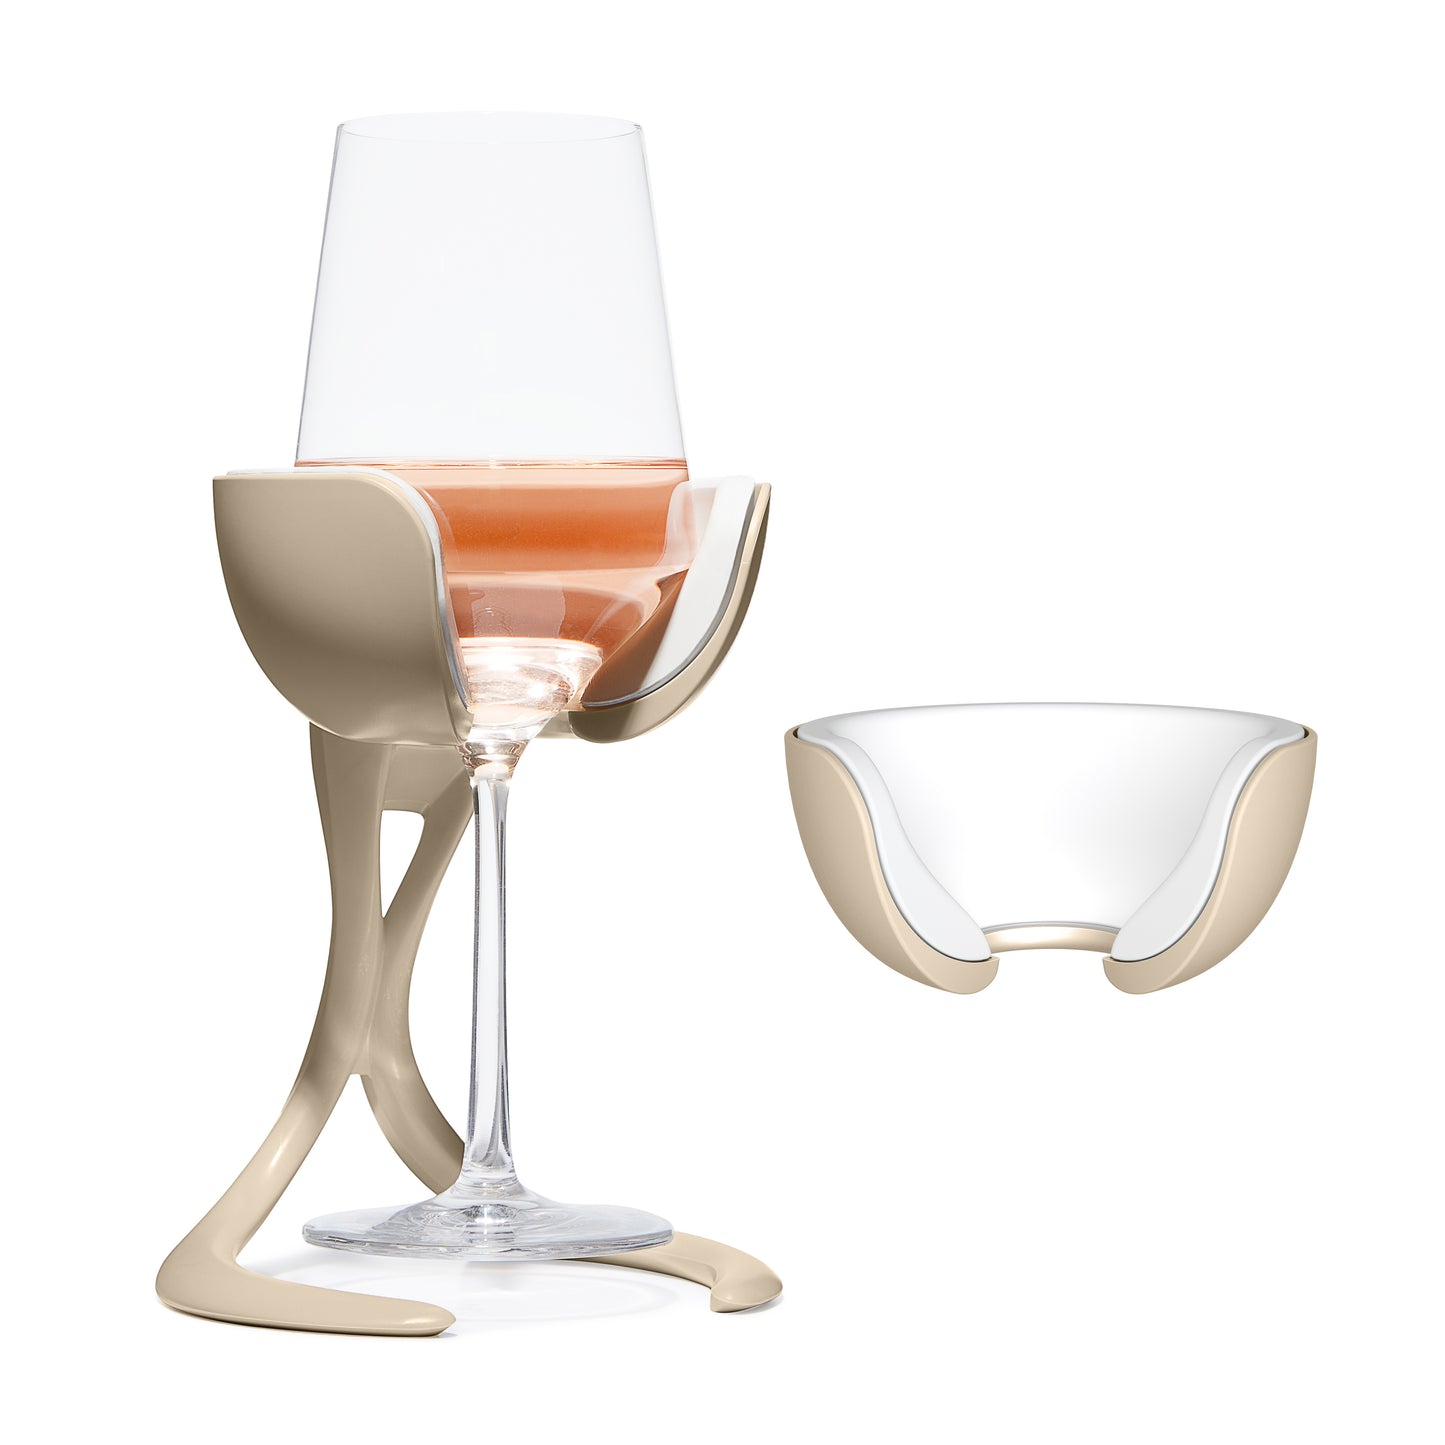 VoChill Stemless Wine Glass Chiller Pair + 2 Extra Chill Cradles | Quartz | Best Wine Gift